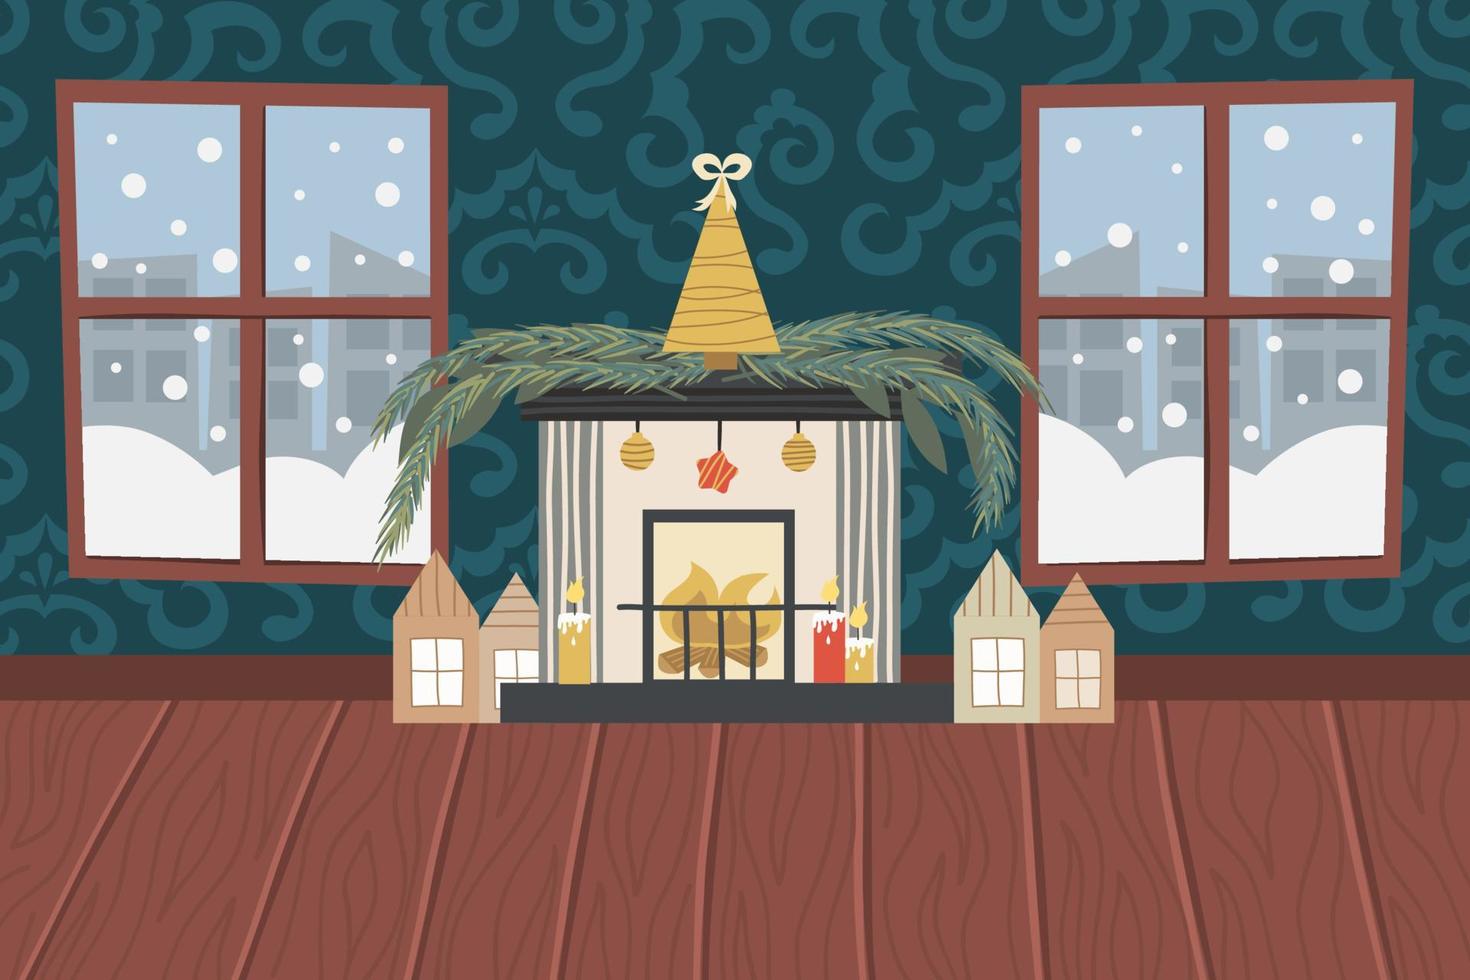 soggiorno natalizio con camino, pavimento in legno, carta da parati a motivi geometrici e finestre innevate.camino con albero di natale dorato, candele e case. illustrazione vettoriale per un interno festivo.